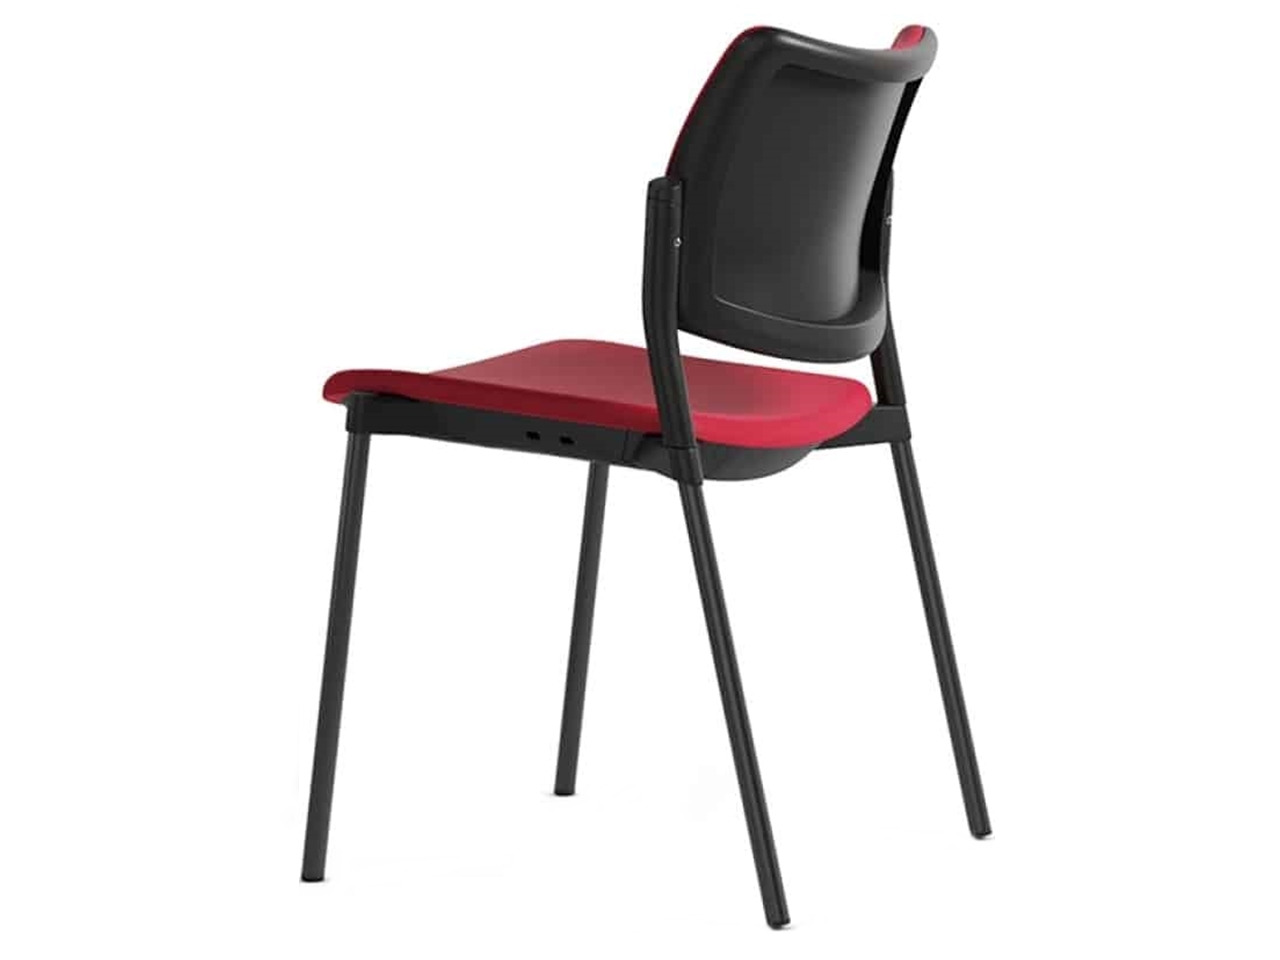 ANT-Tip Top TN fémvázas szék